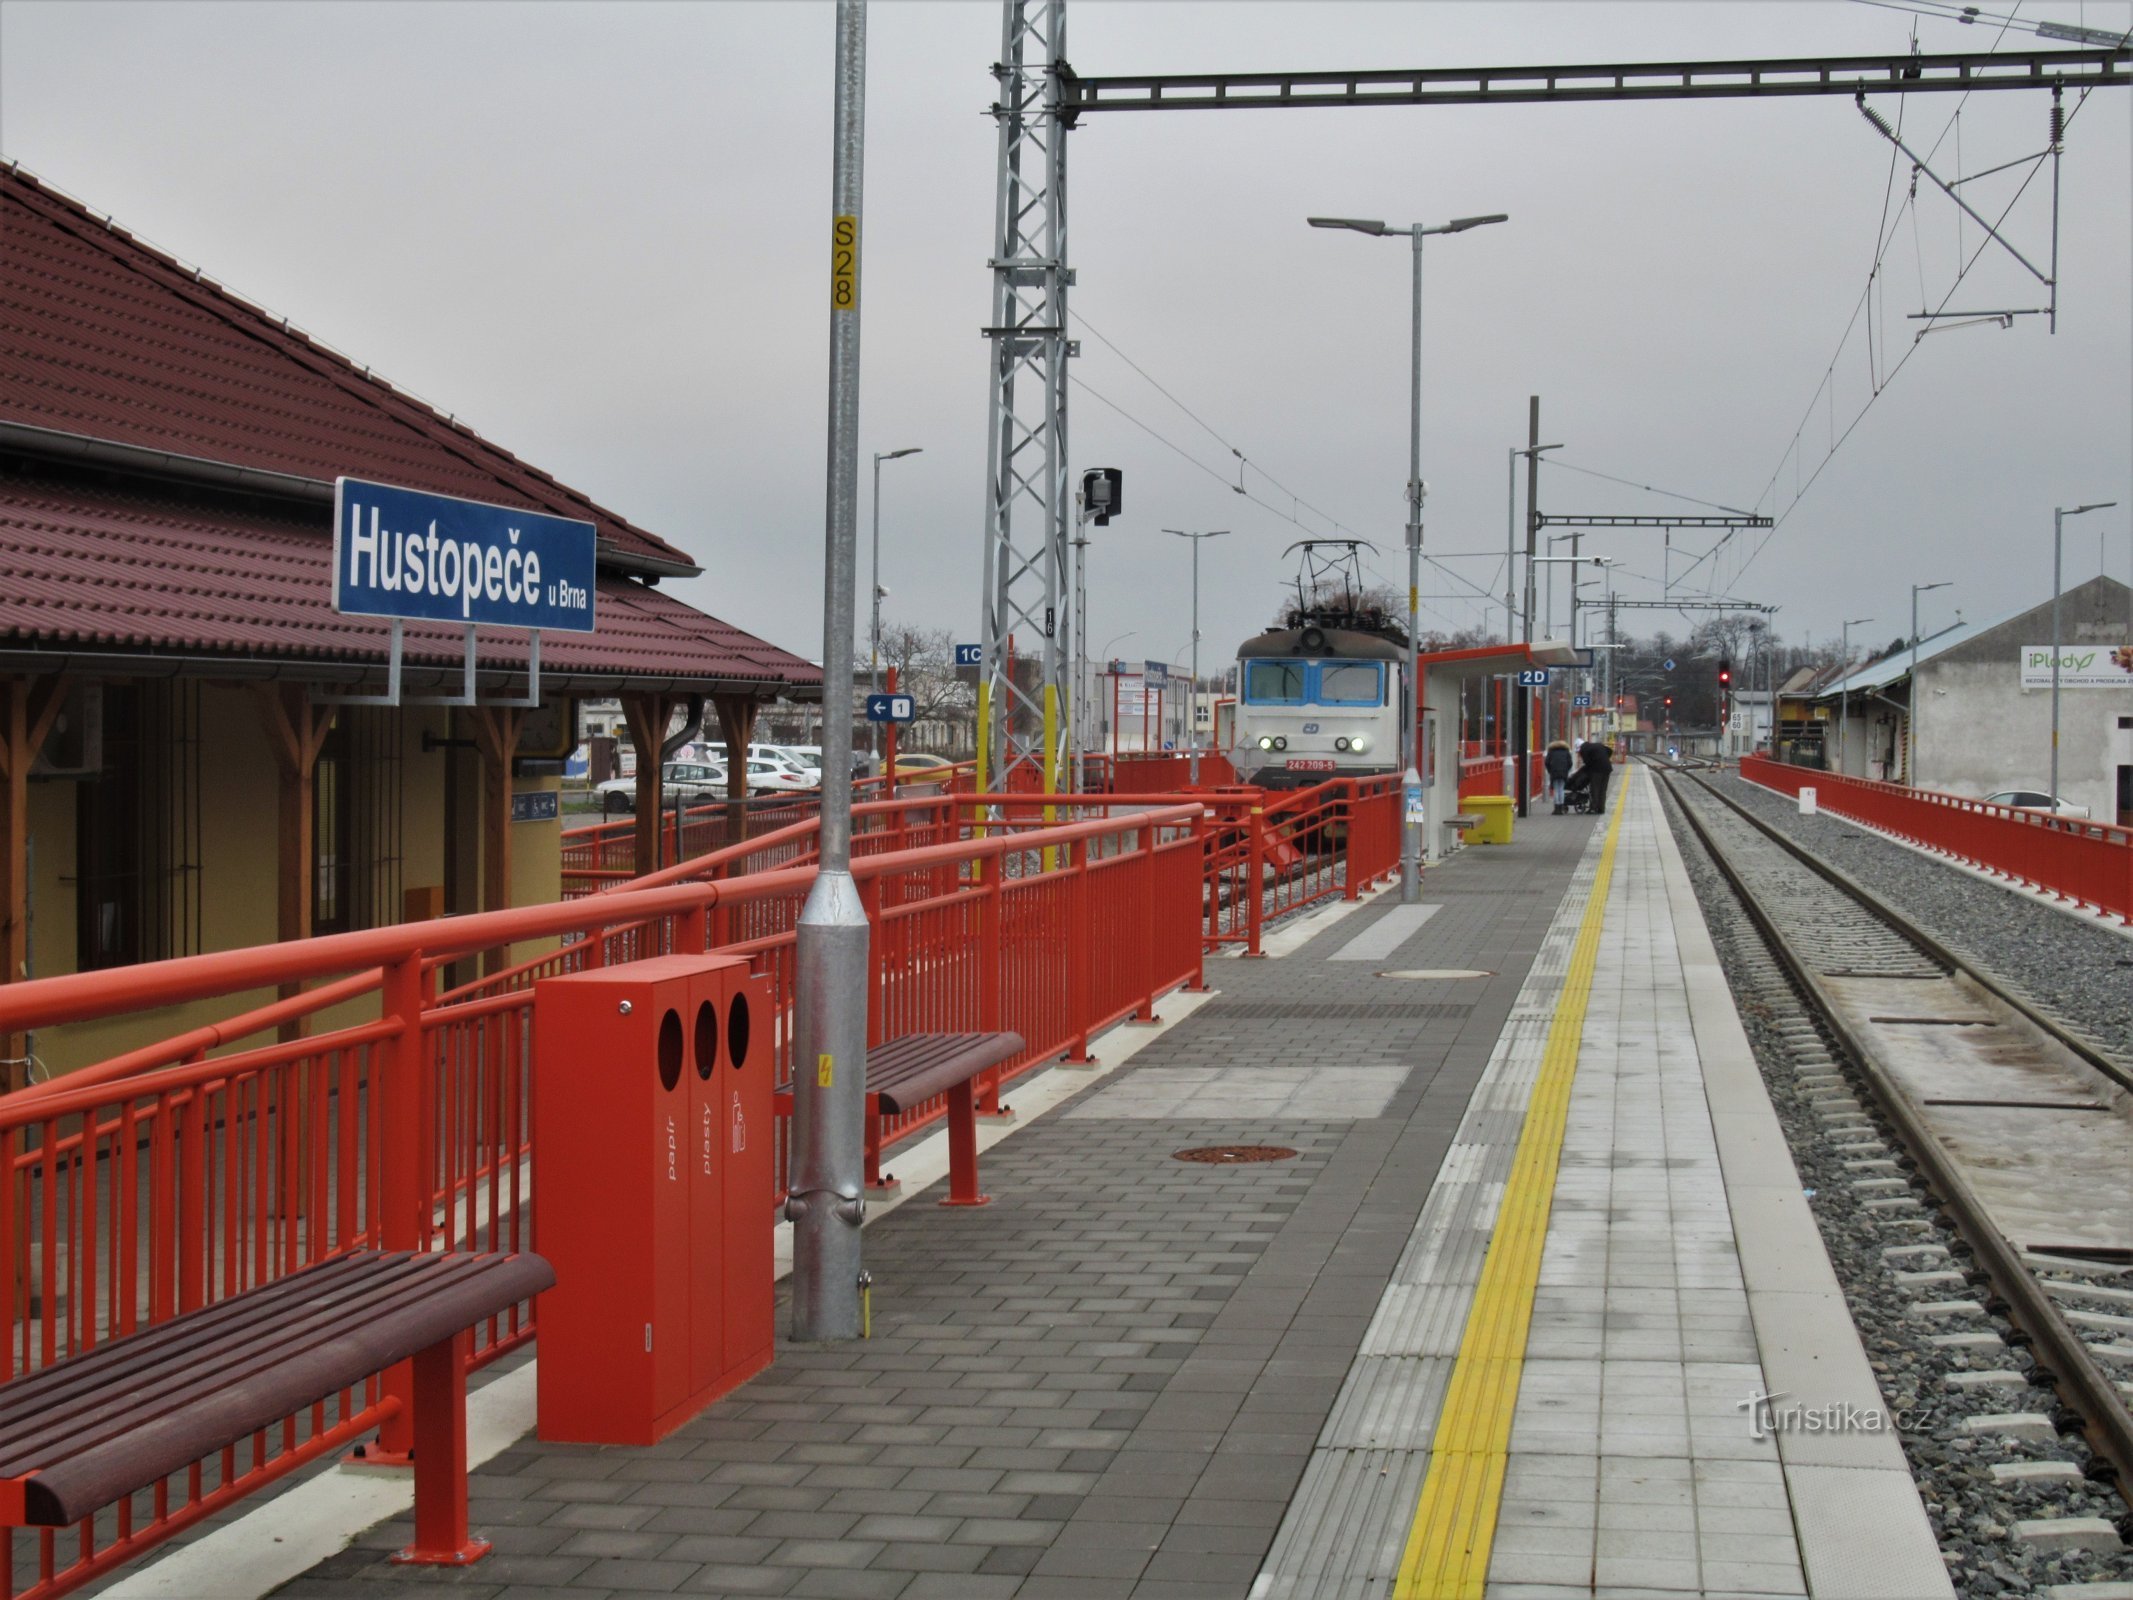 Estação eletrificada recém-inaugurada com chegada de trem em dezembro de 2020